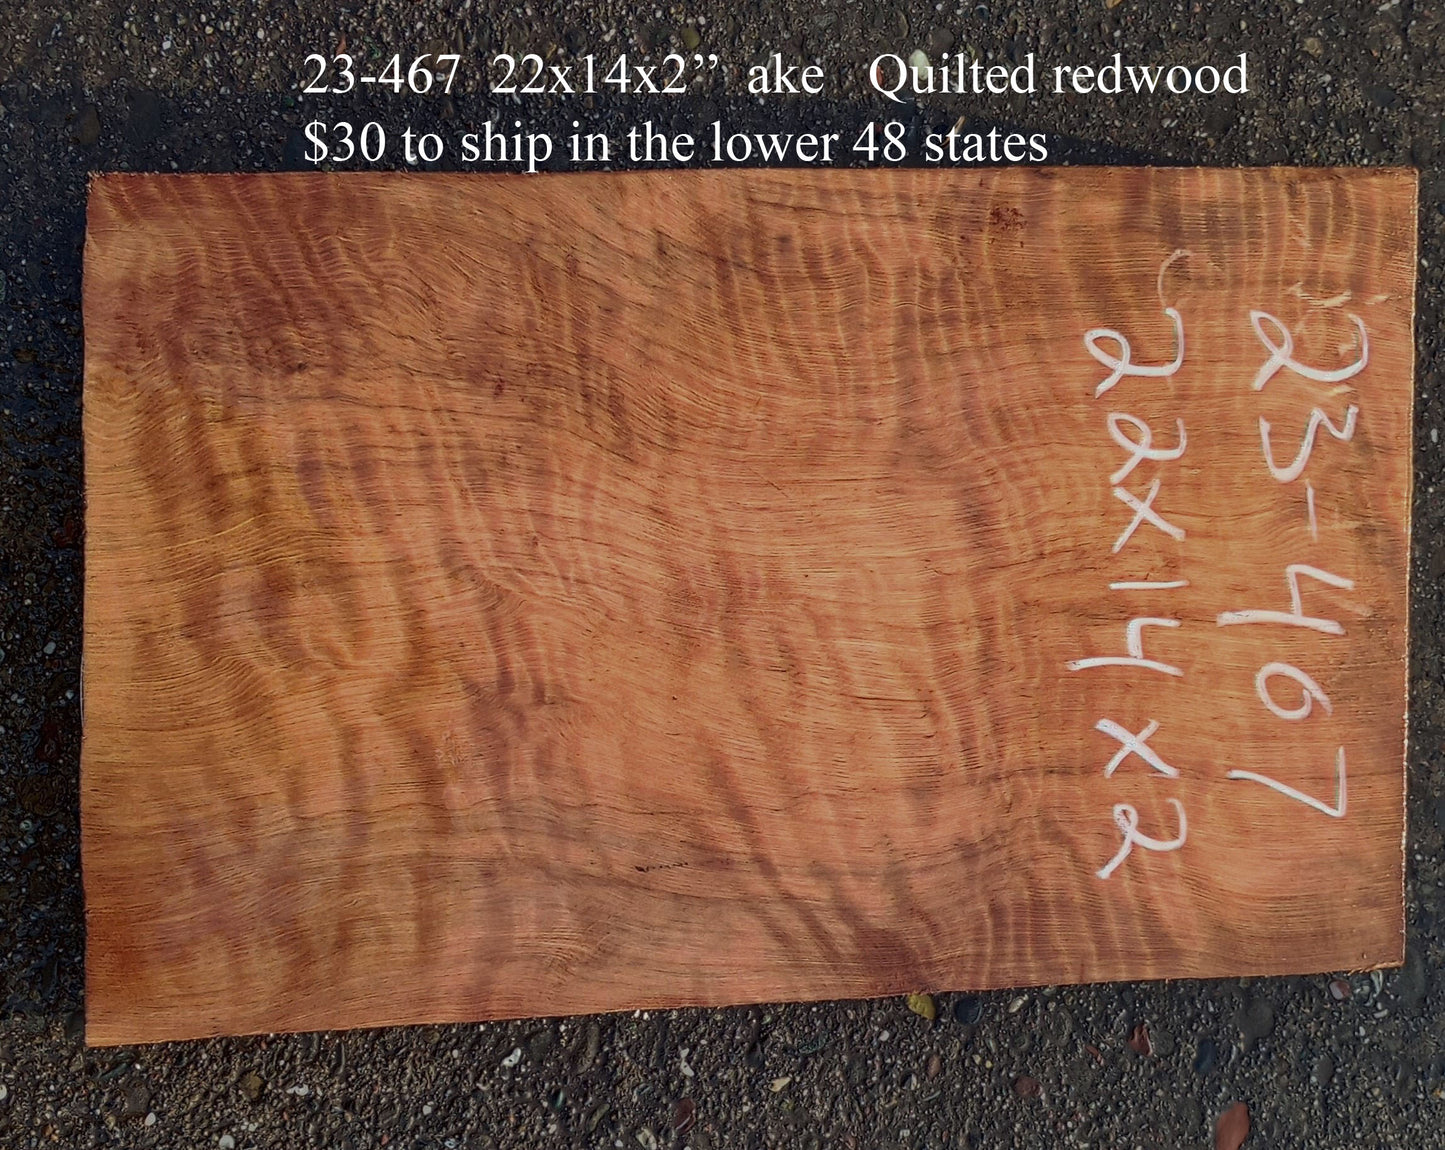 Quilted Redwood | Guitar Billet | Craft Wood | Luthier Wood | DIY crafts | 23-467-g